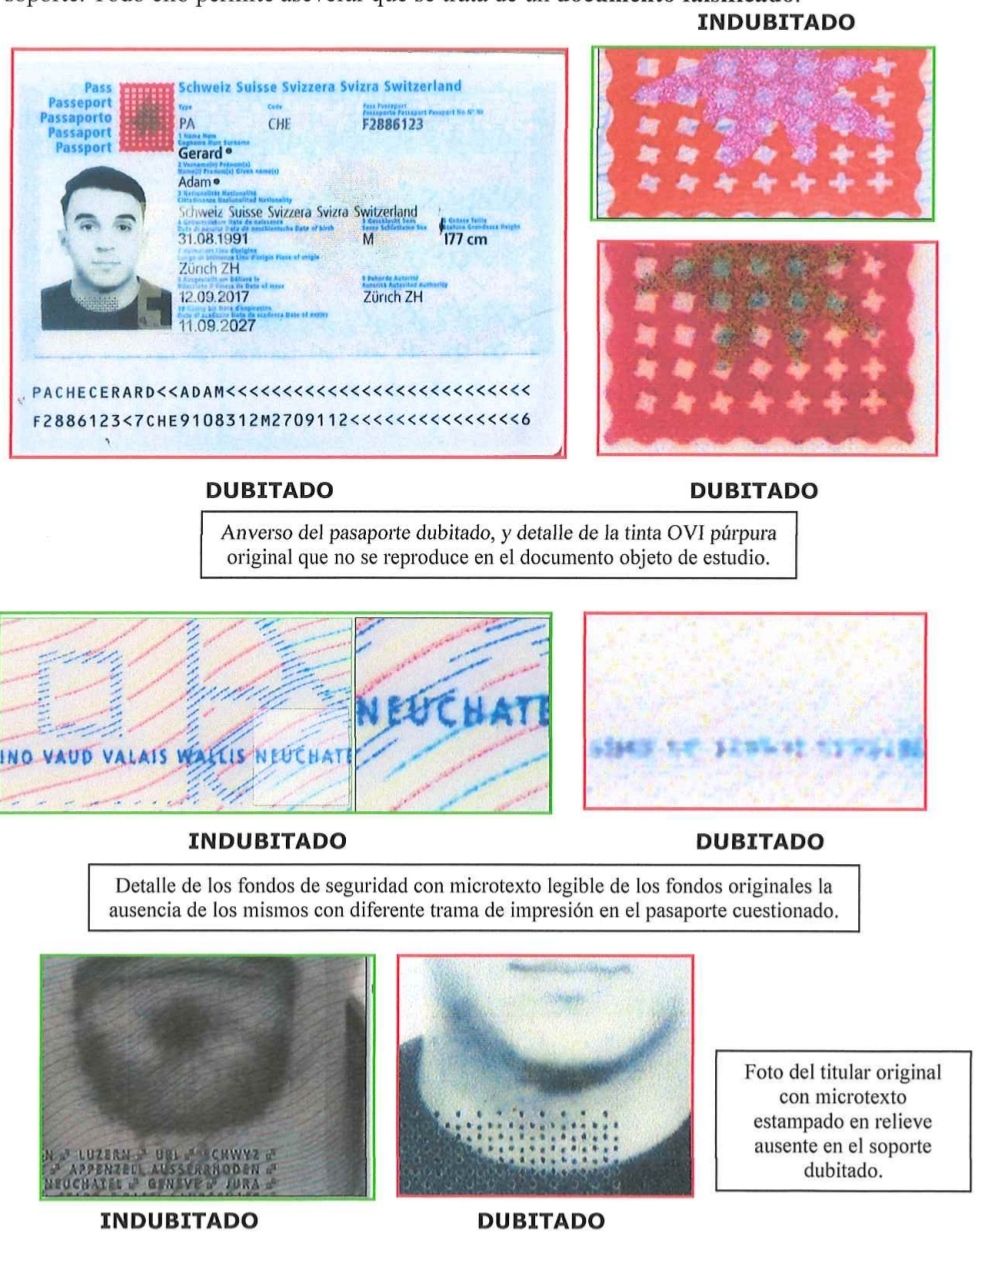 Análisis del pasaporte del sospechoso.